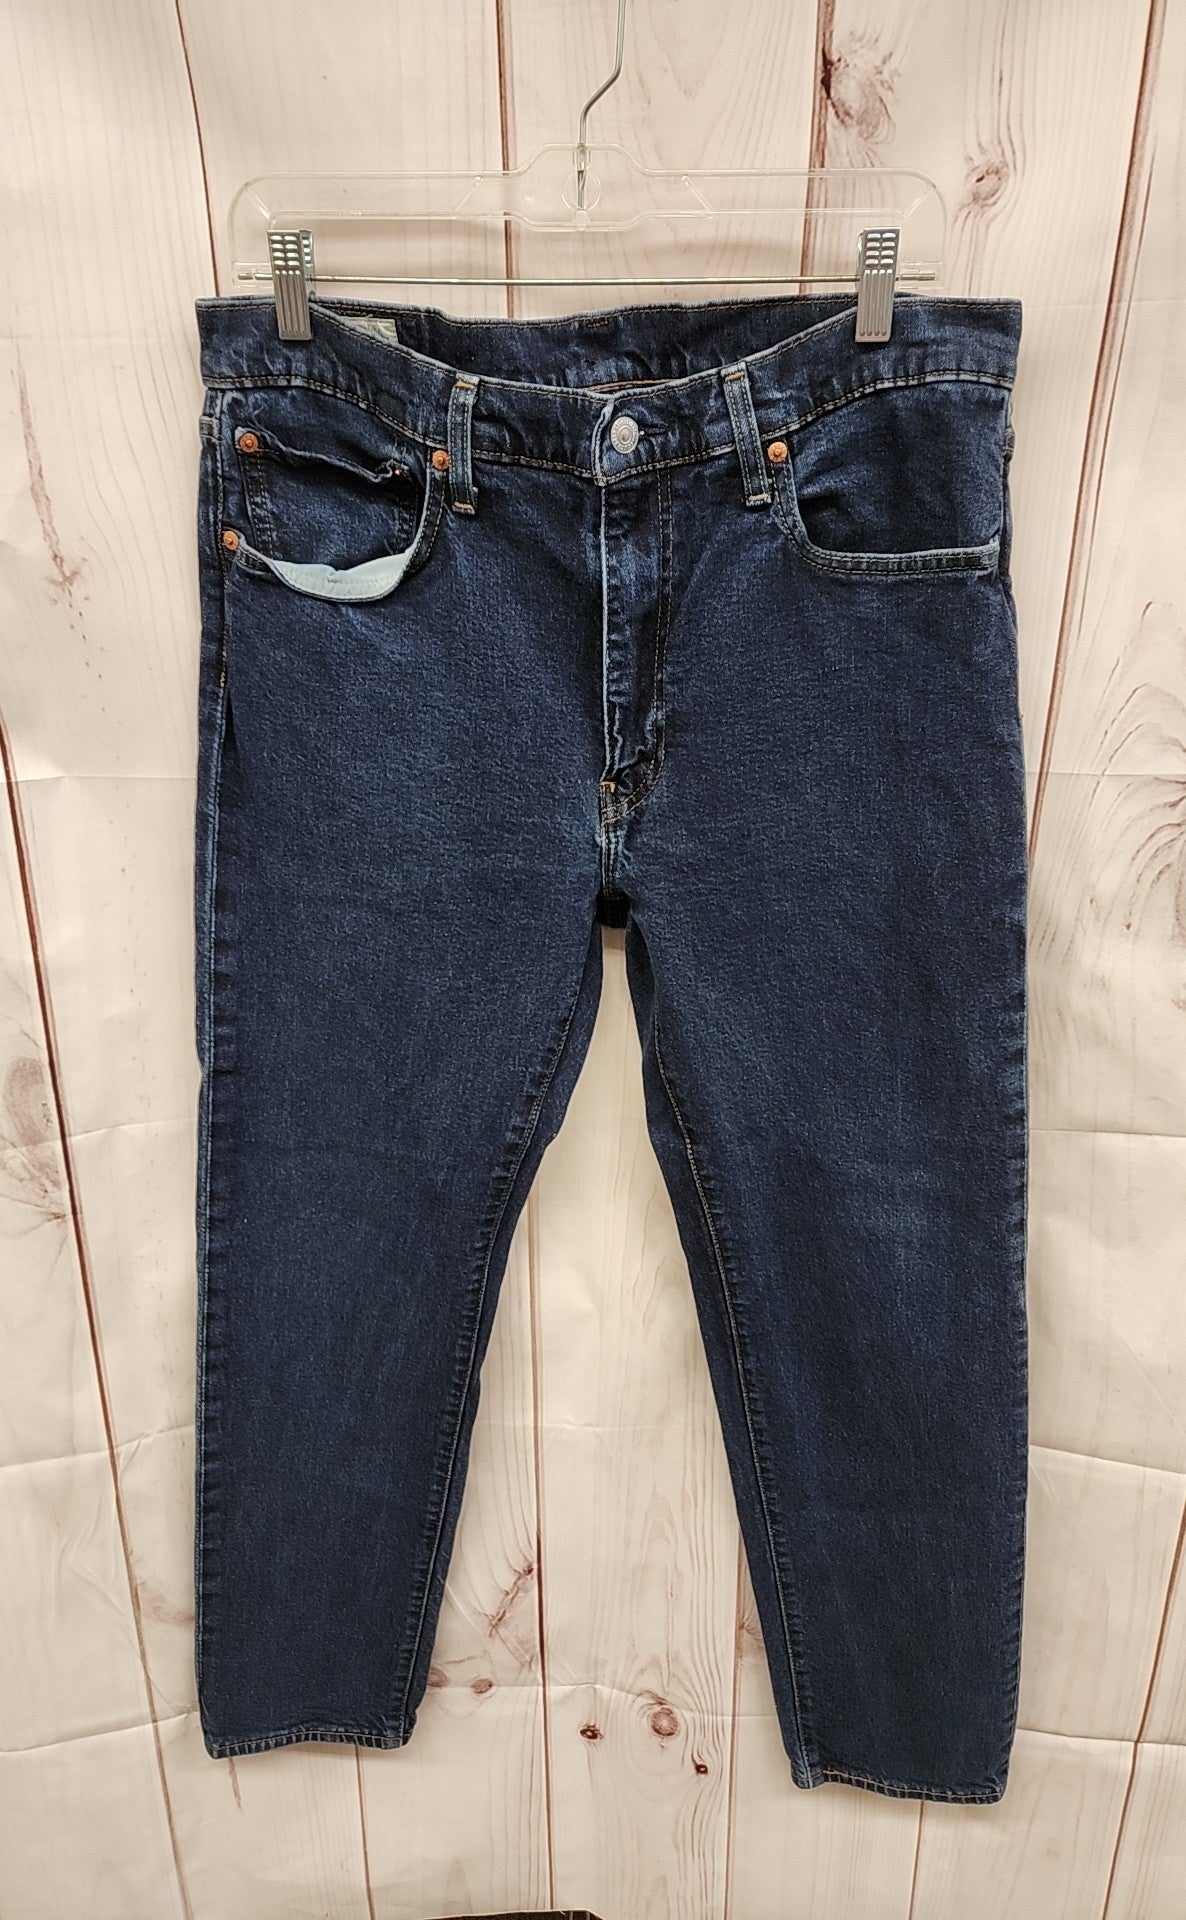 Levis Men's Size 36x32 Blue Jeans